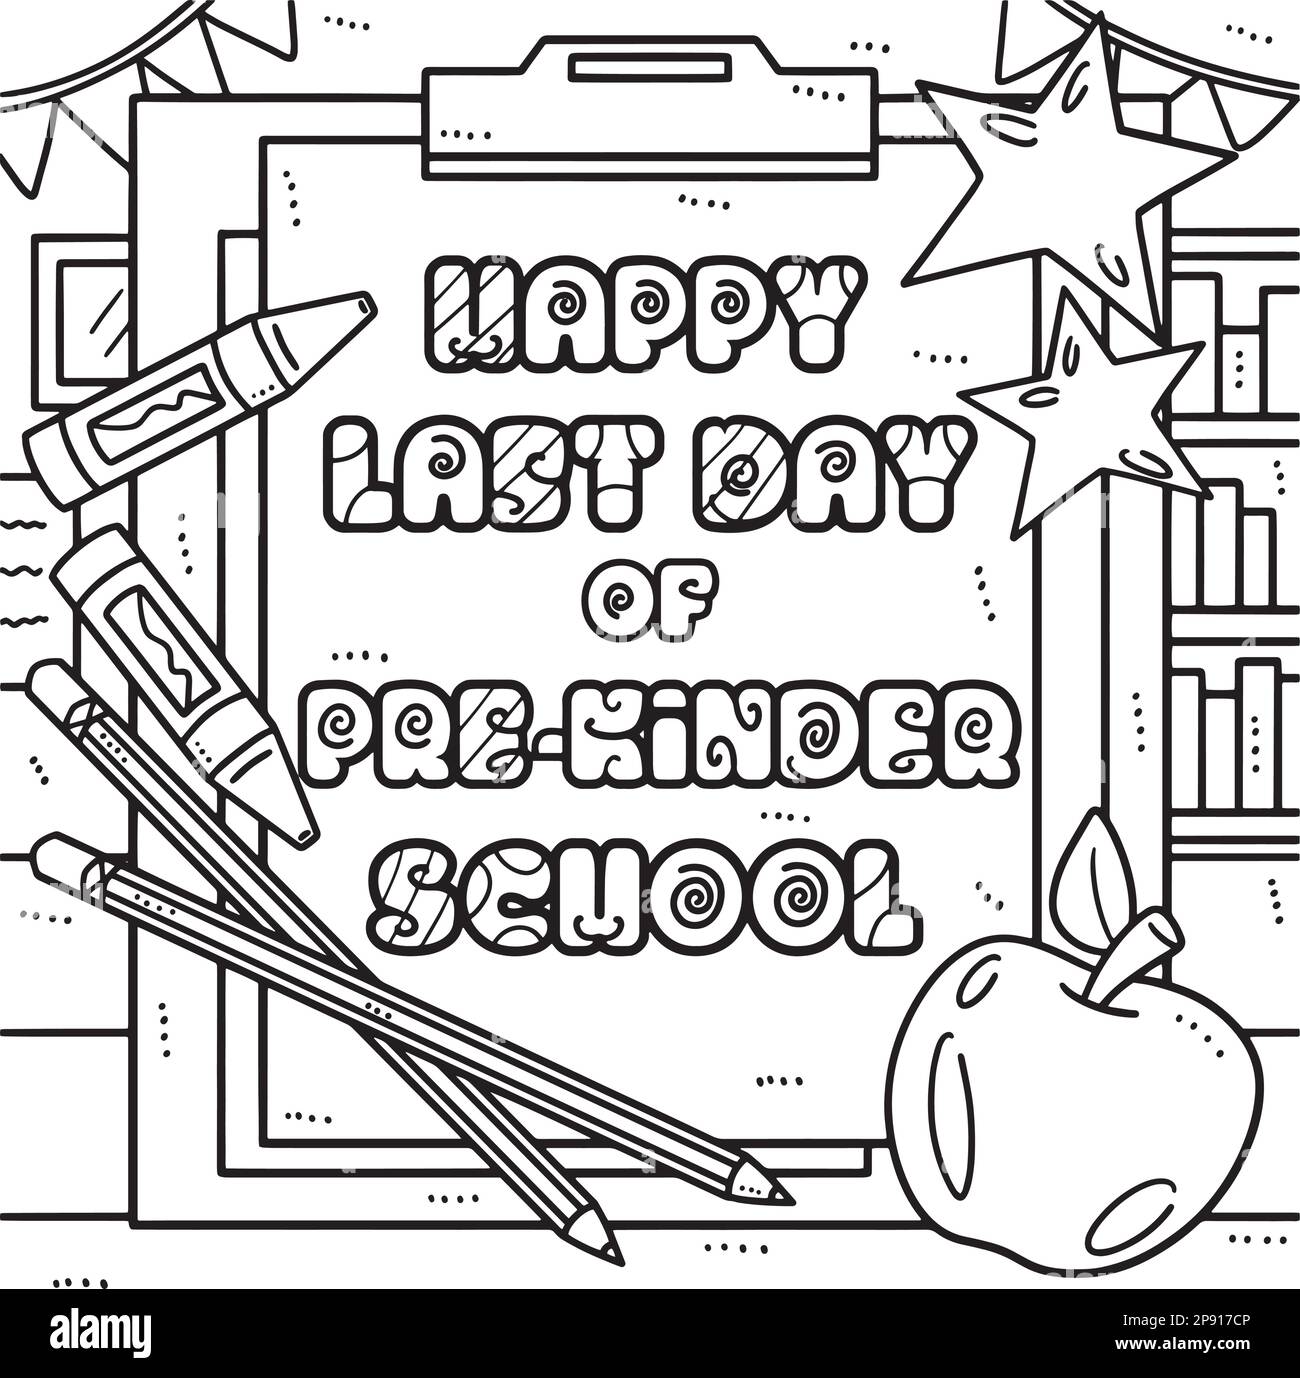 Happy last day of pre k school coloring page stock vector image art